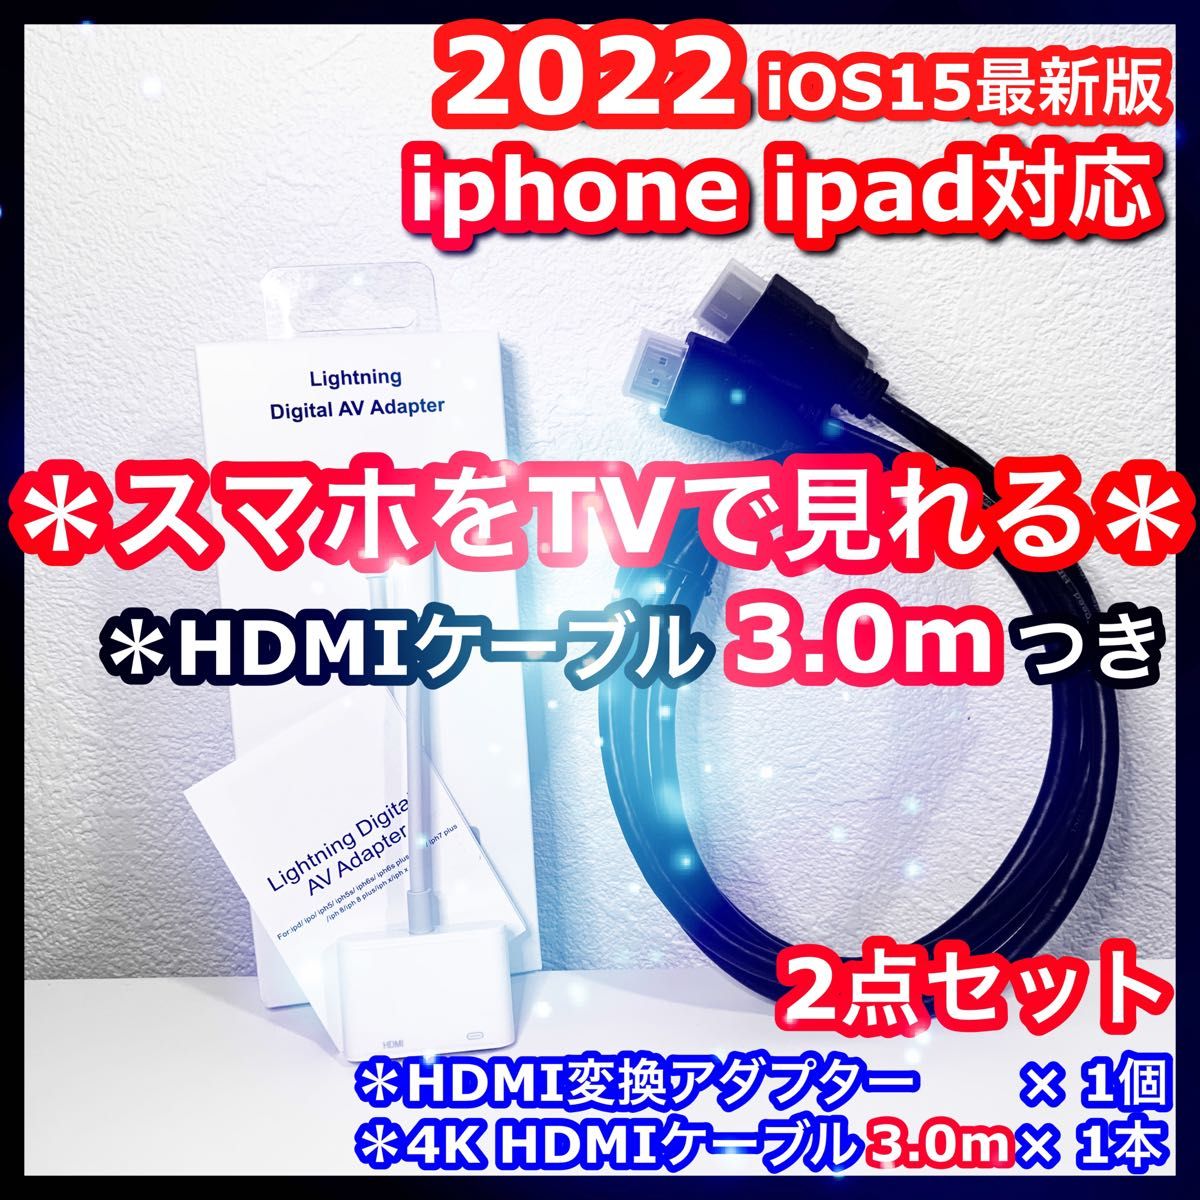 2点 3m iPhone iPad HDMI 変換アダプタ ケーブル iPhoneテレビ スマホテレビ テレビスマホ スマホ